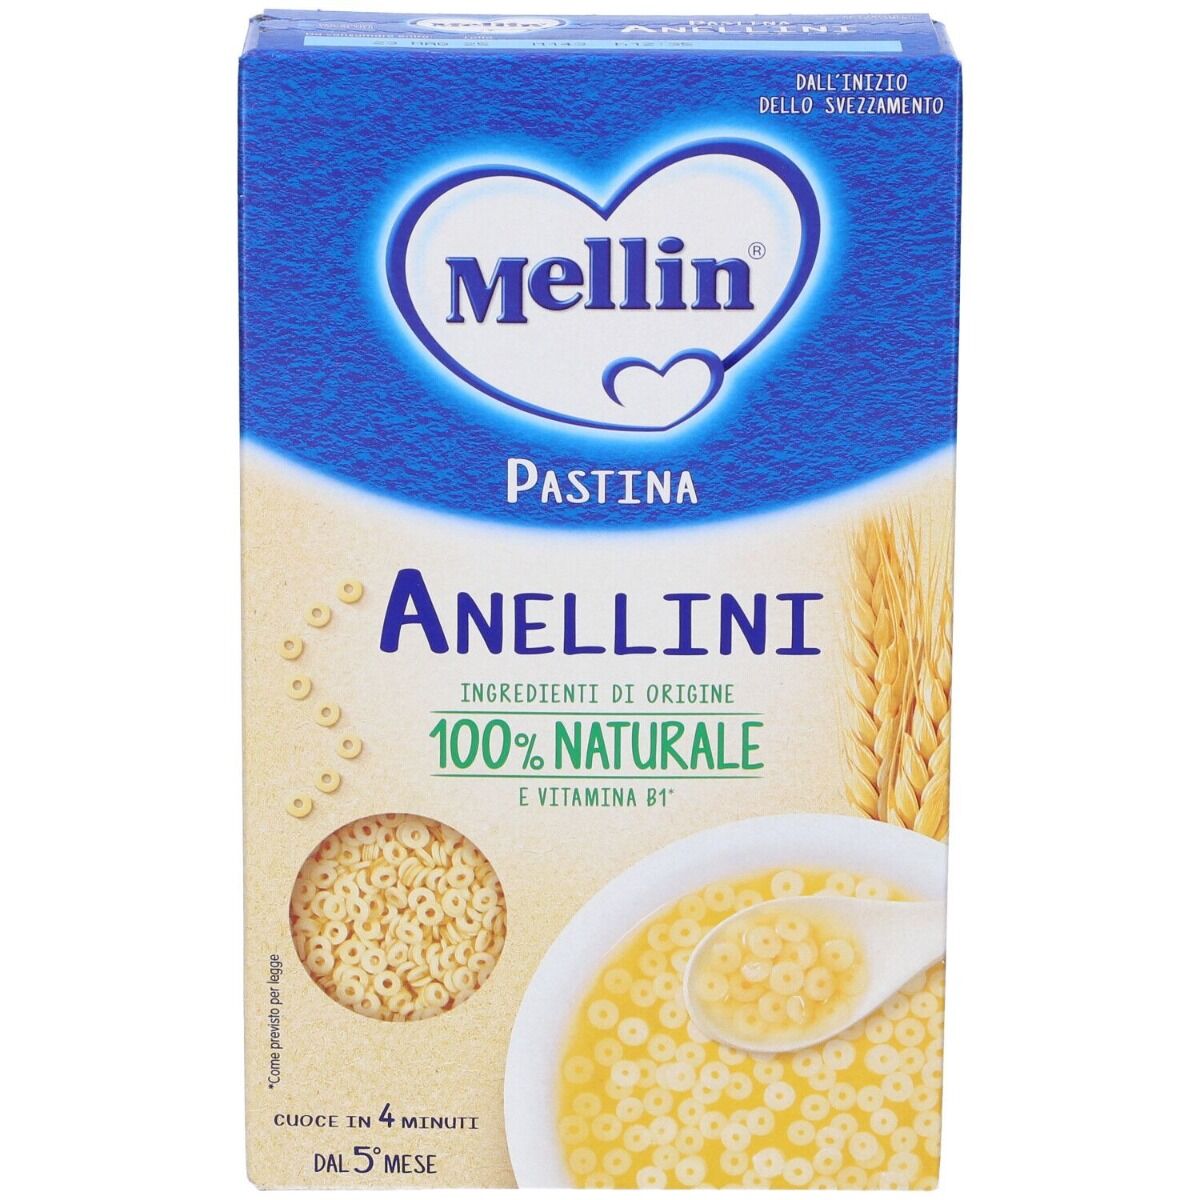 MELLIN Pastina Anellini 320 g